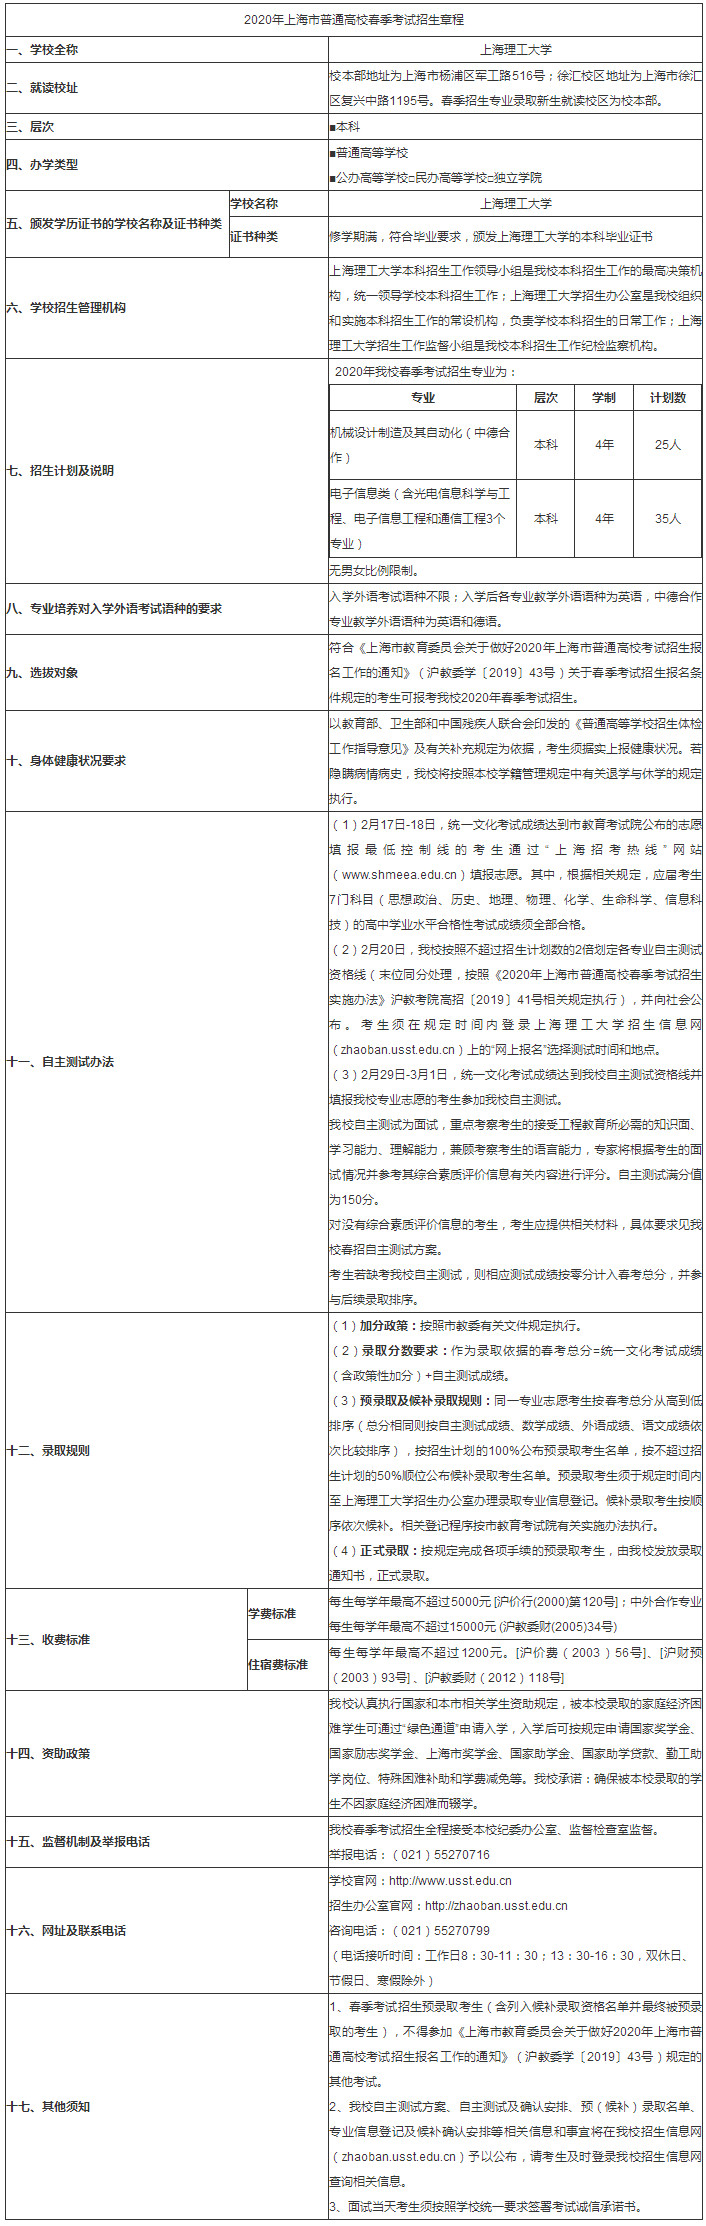 上海理工大学2020年春季高考招生章程.jpg